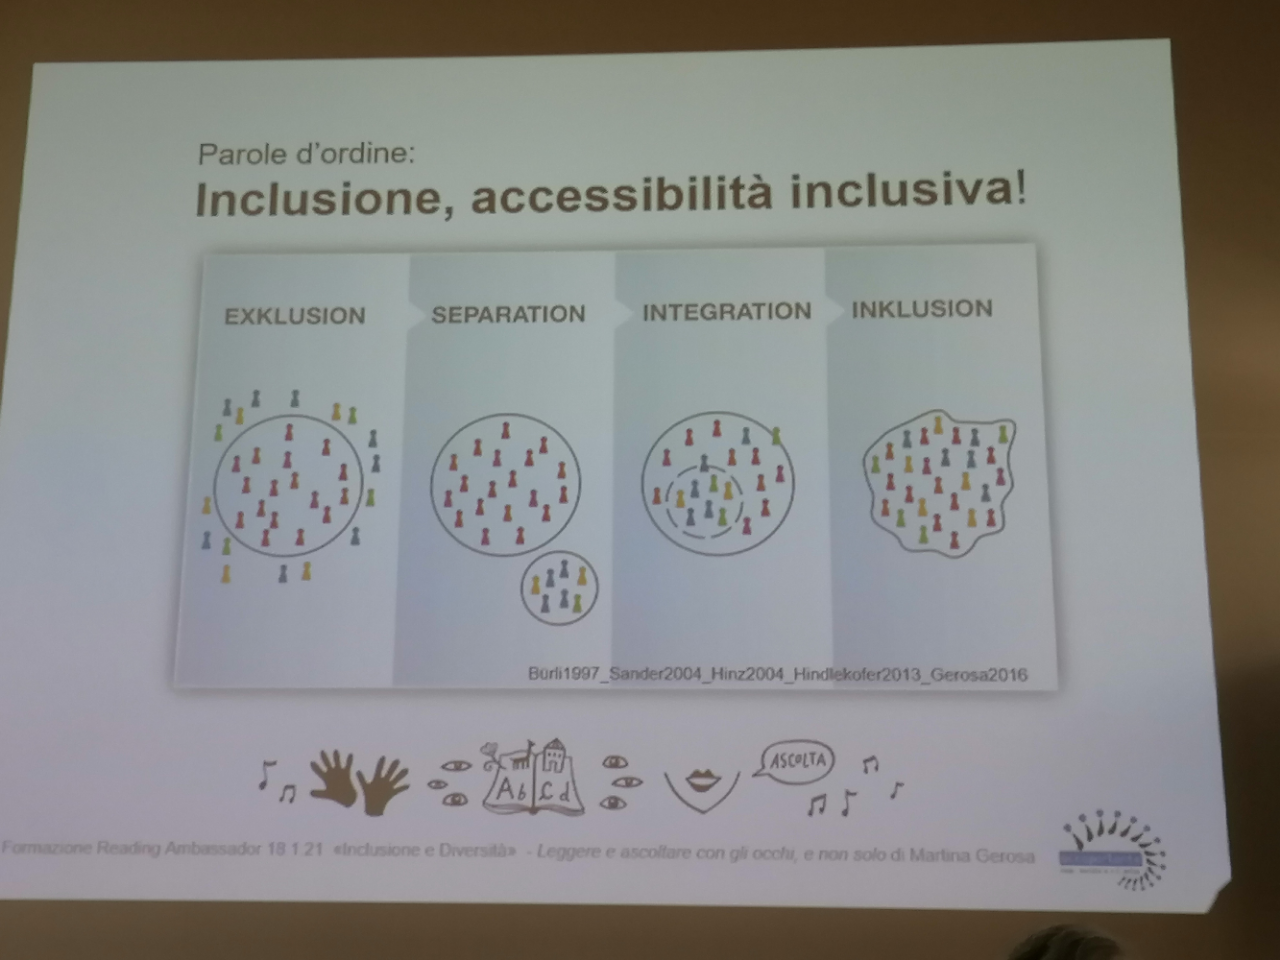 dall'esclusione all'inclusione